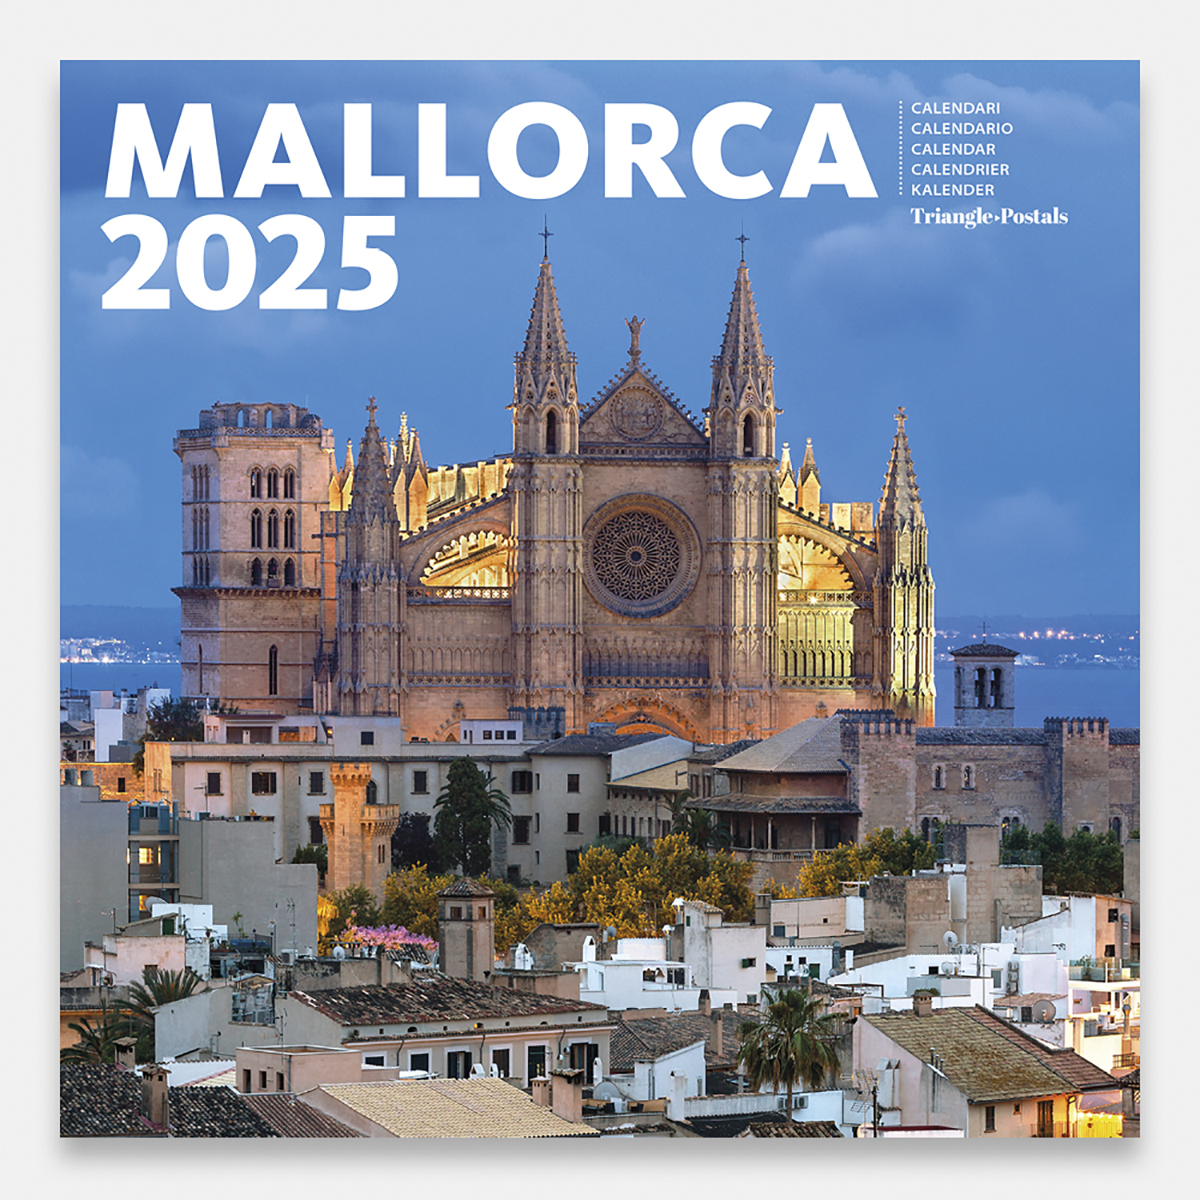 Calendari 2025 Mallorca 25mag2 calendario pared 2025 mallorca